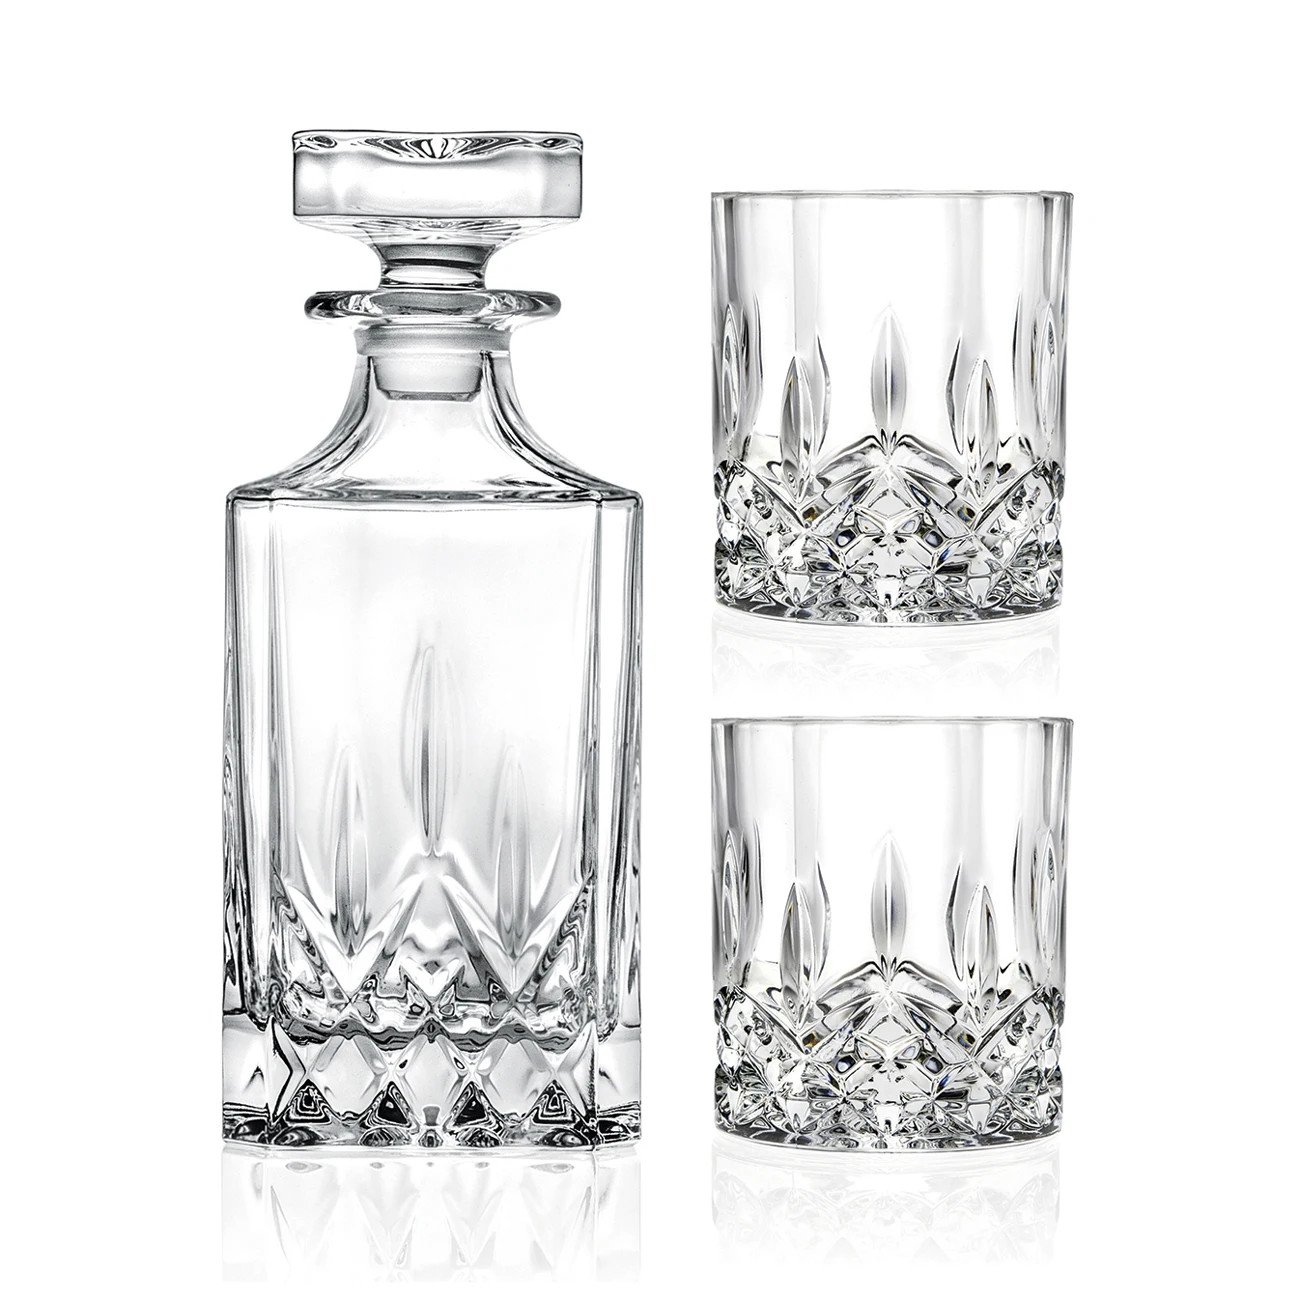 Whiskyglas + flaske, Opera, lavet af krystal, 210 + 750 ml, sæt med 3 stk.